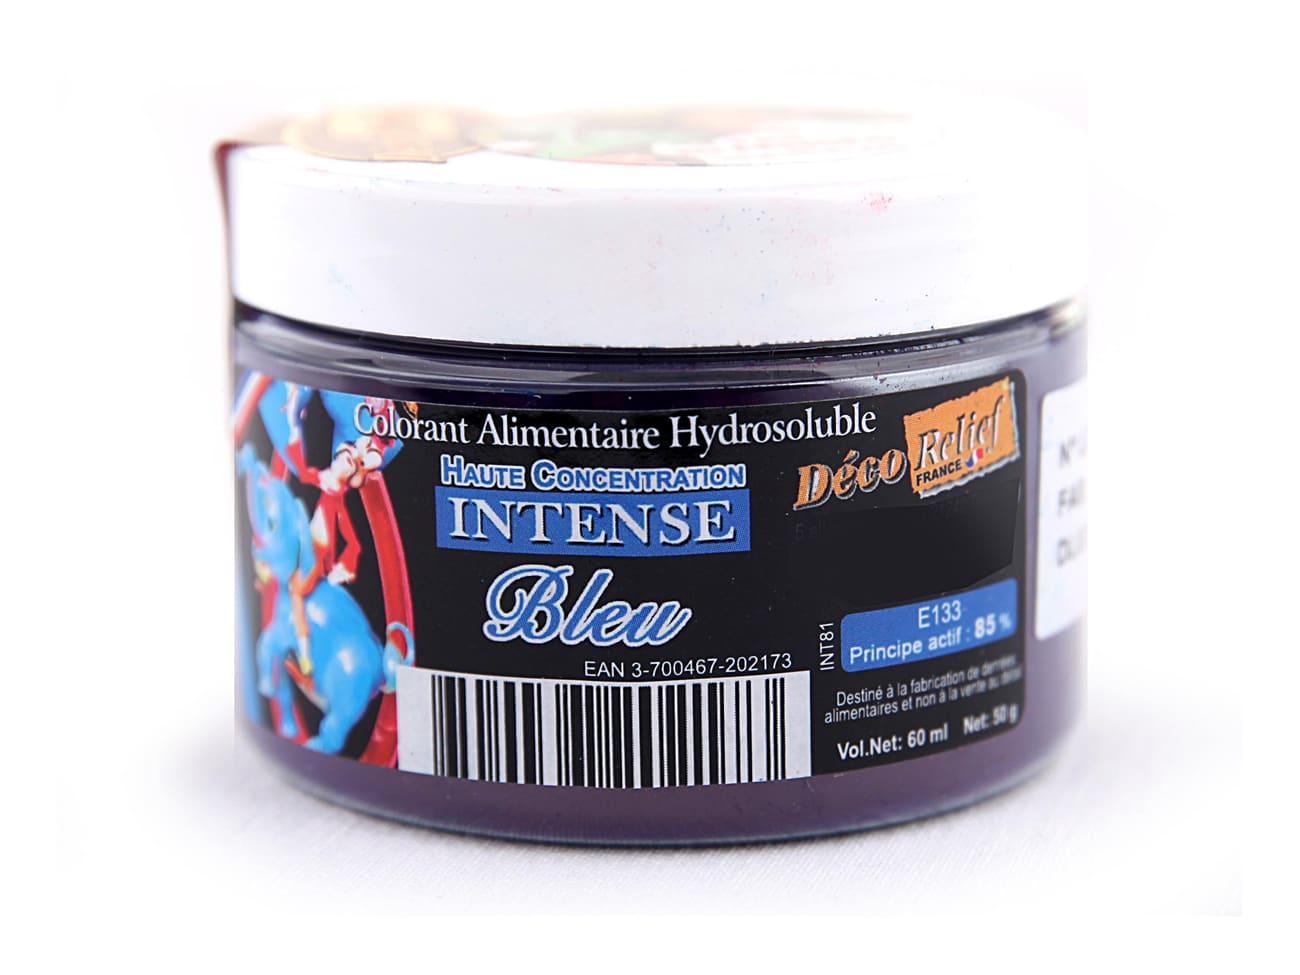 Colorant alimentaire bleu ciel - hydrosoluble - 25 g - Matfer - Meilleur du  Chef